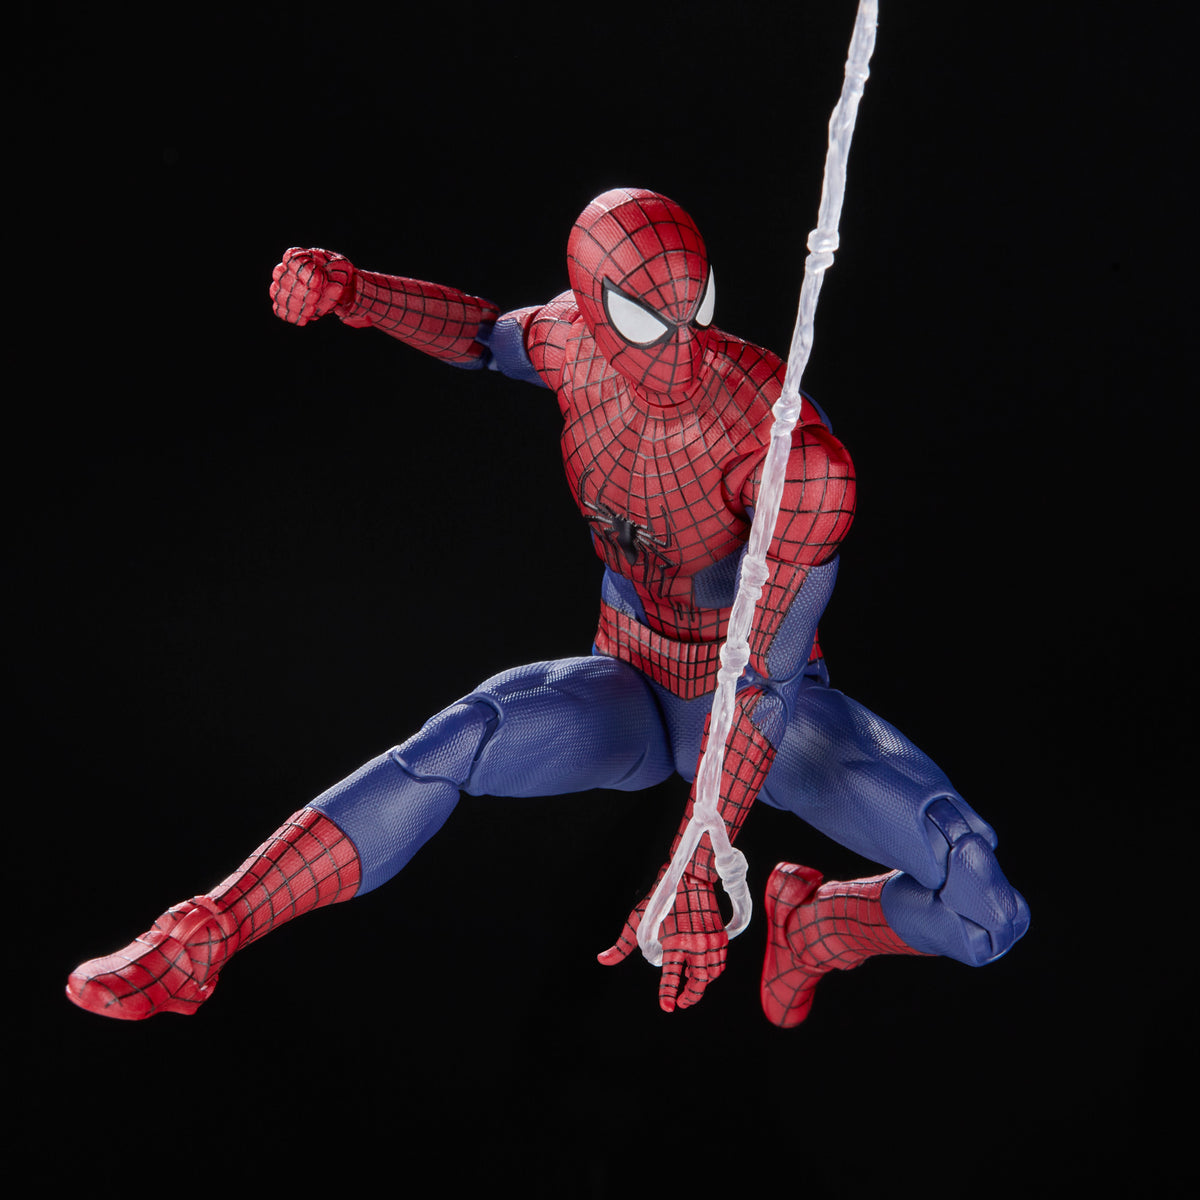 spider-man amazing fantasy (marvel legends) (ke - Comprar Figuras